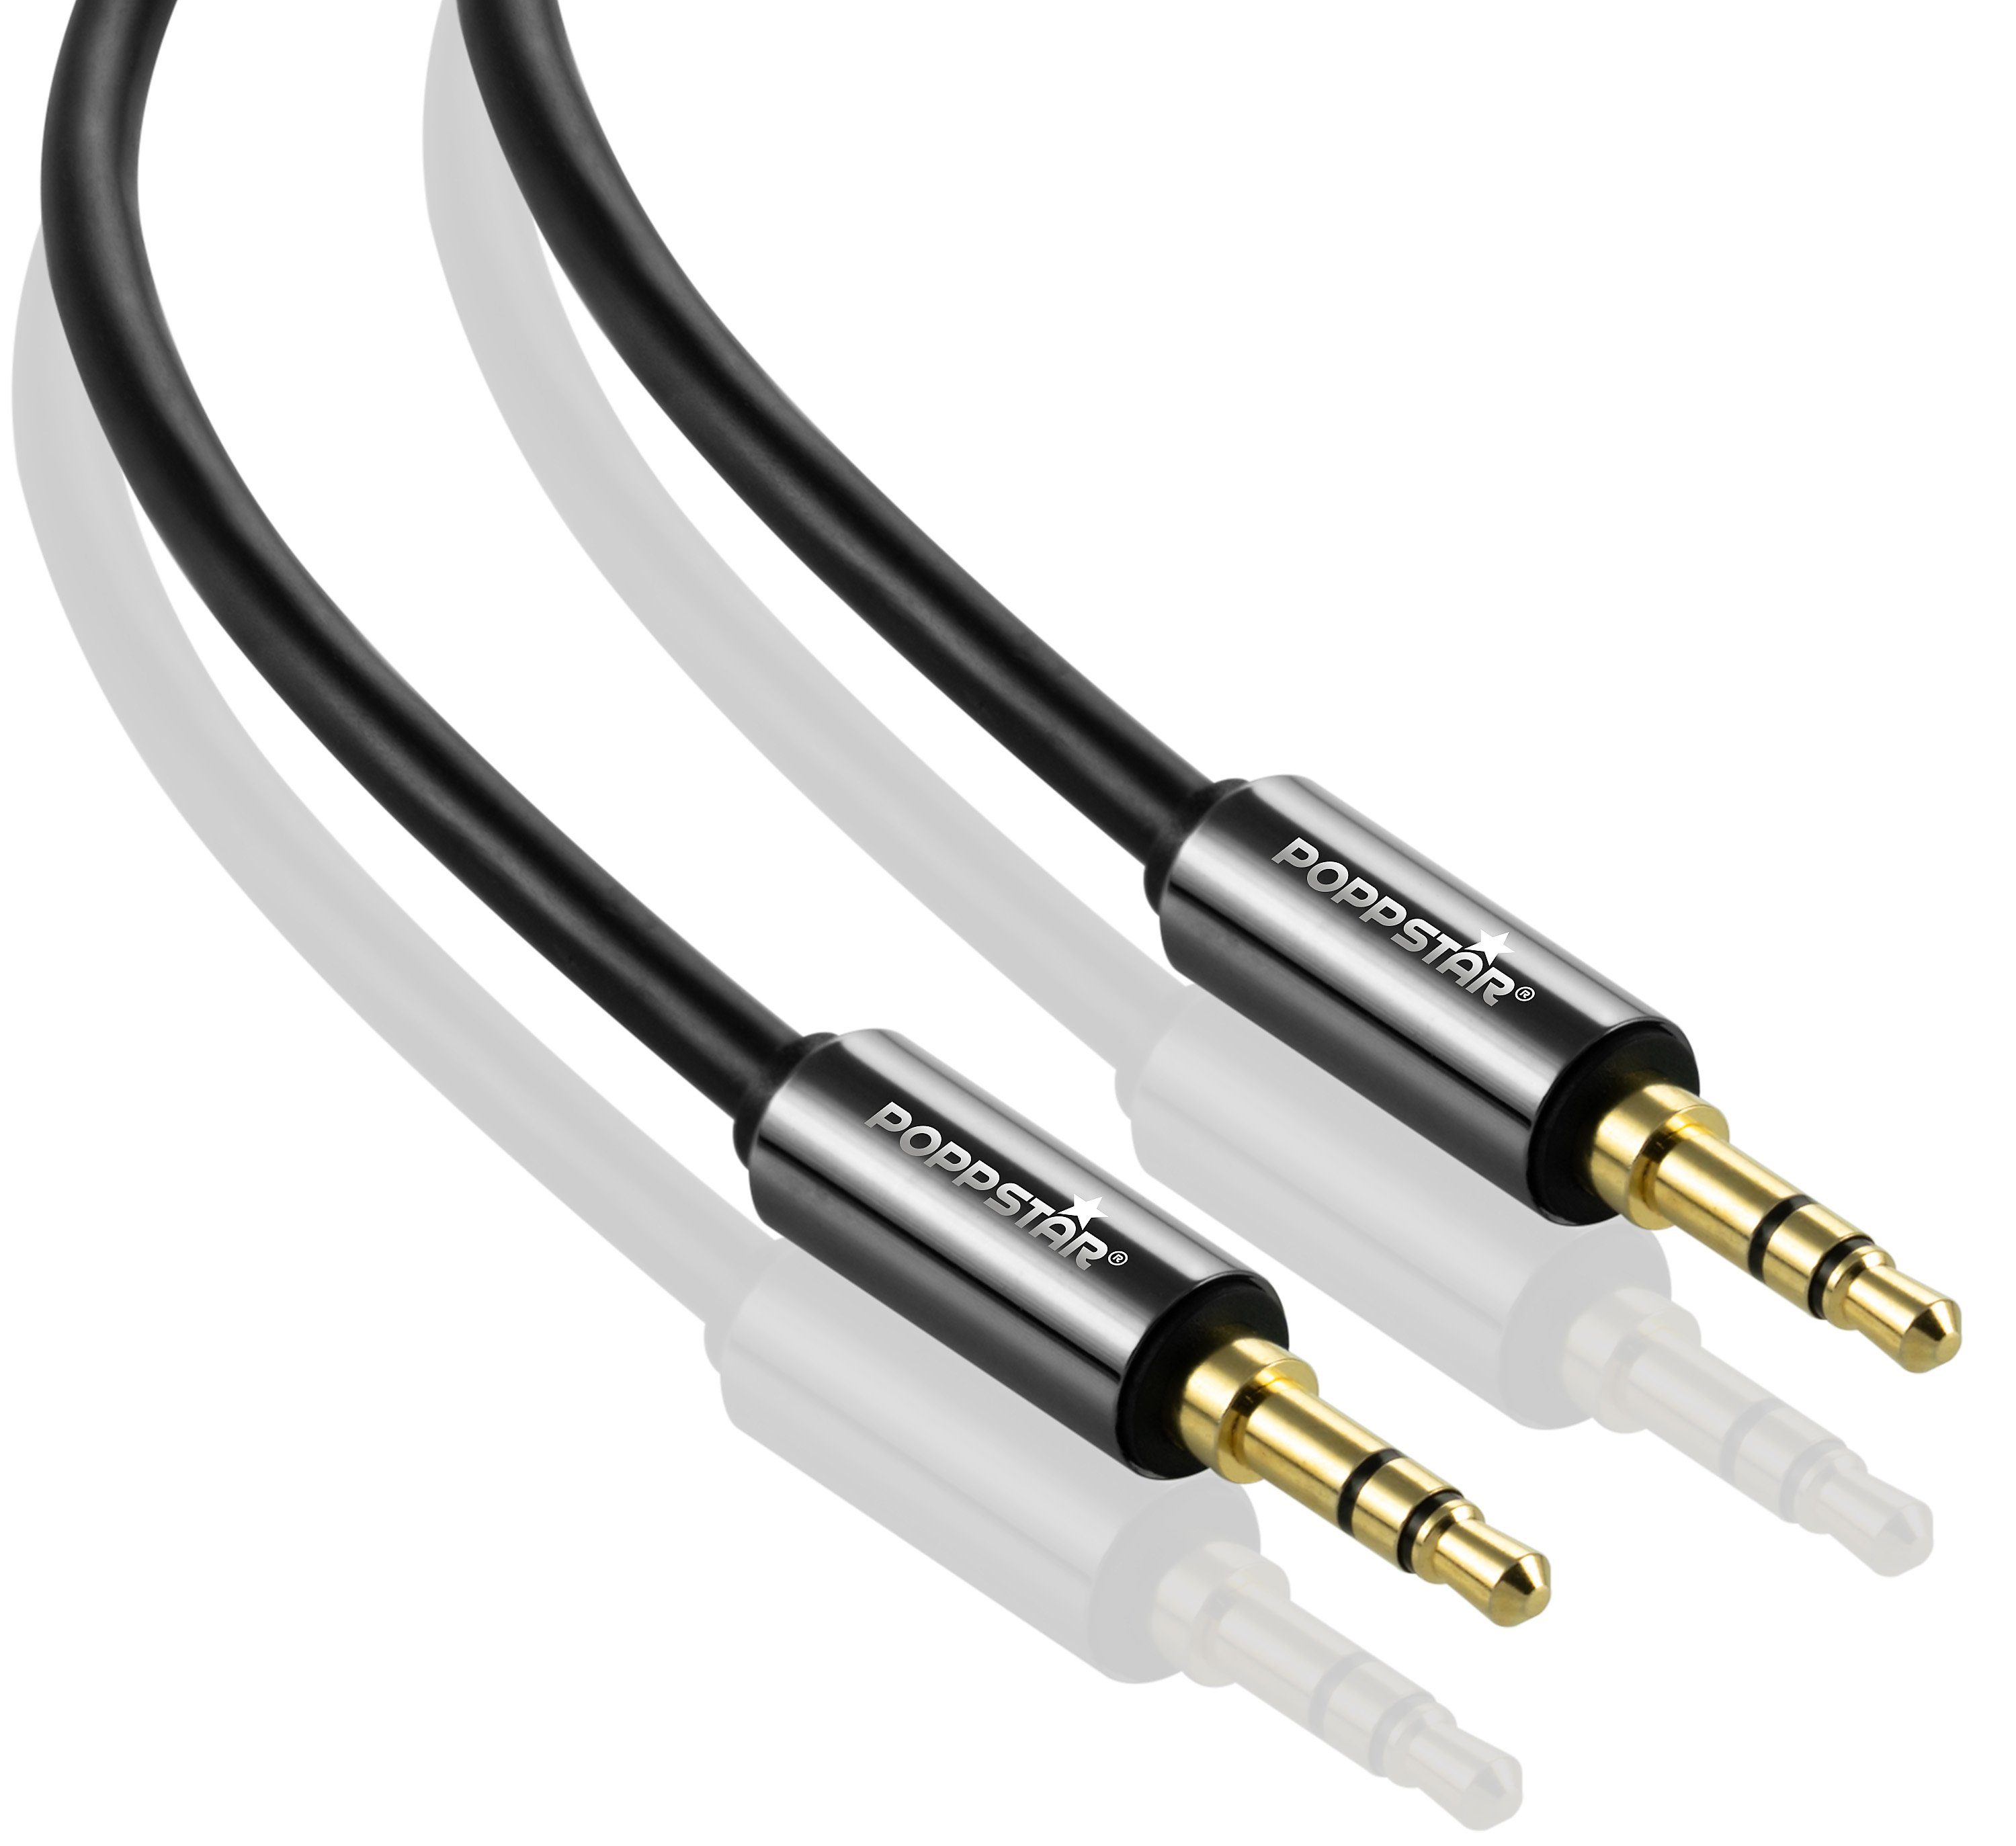 3,5mm Stereo Klinken Audio Klinke AUX Kabel Stecker Cord Für Handy MP3 Auto M-M 